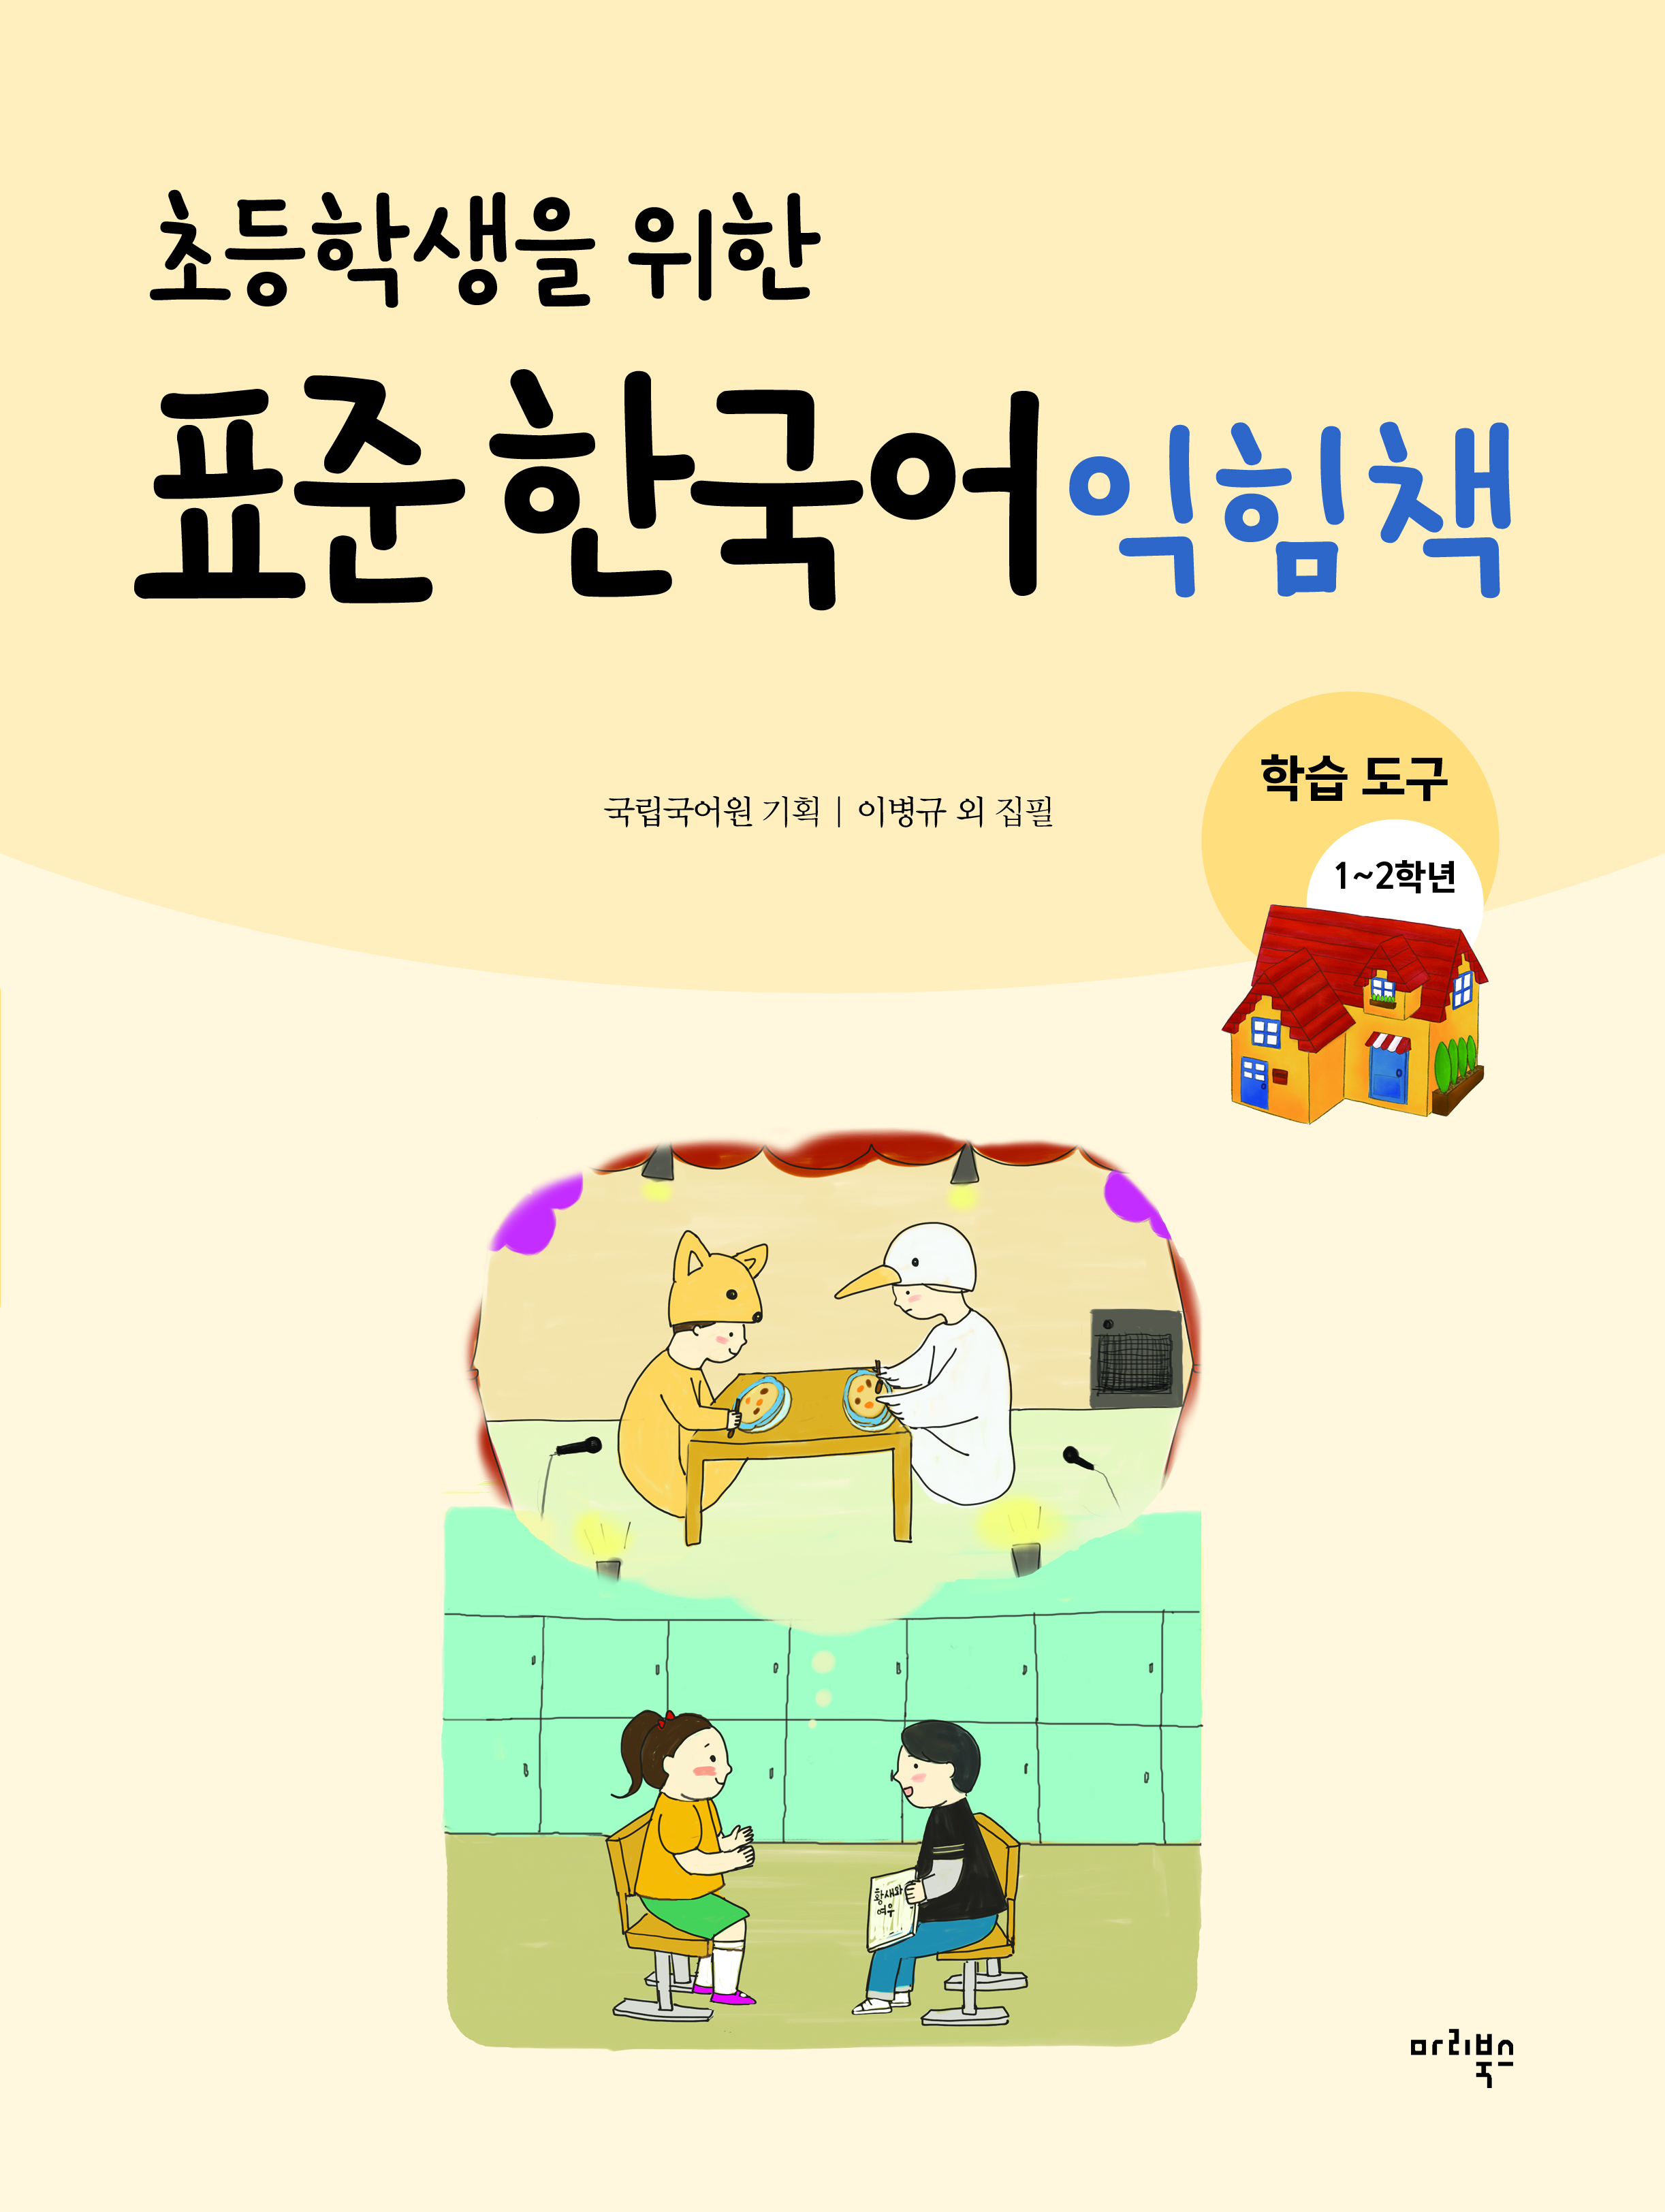 초등학생을 위한 표준 한국어 익힘책 학습 도구 1~2학년용